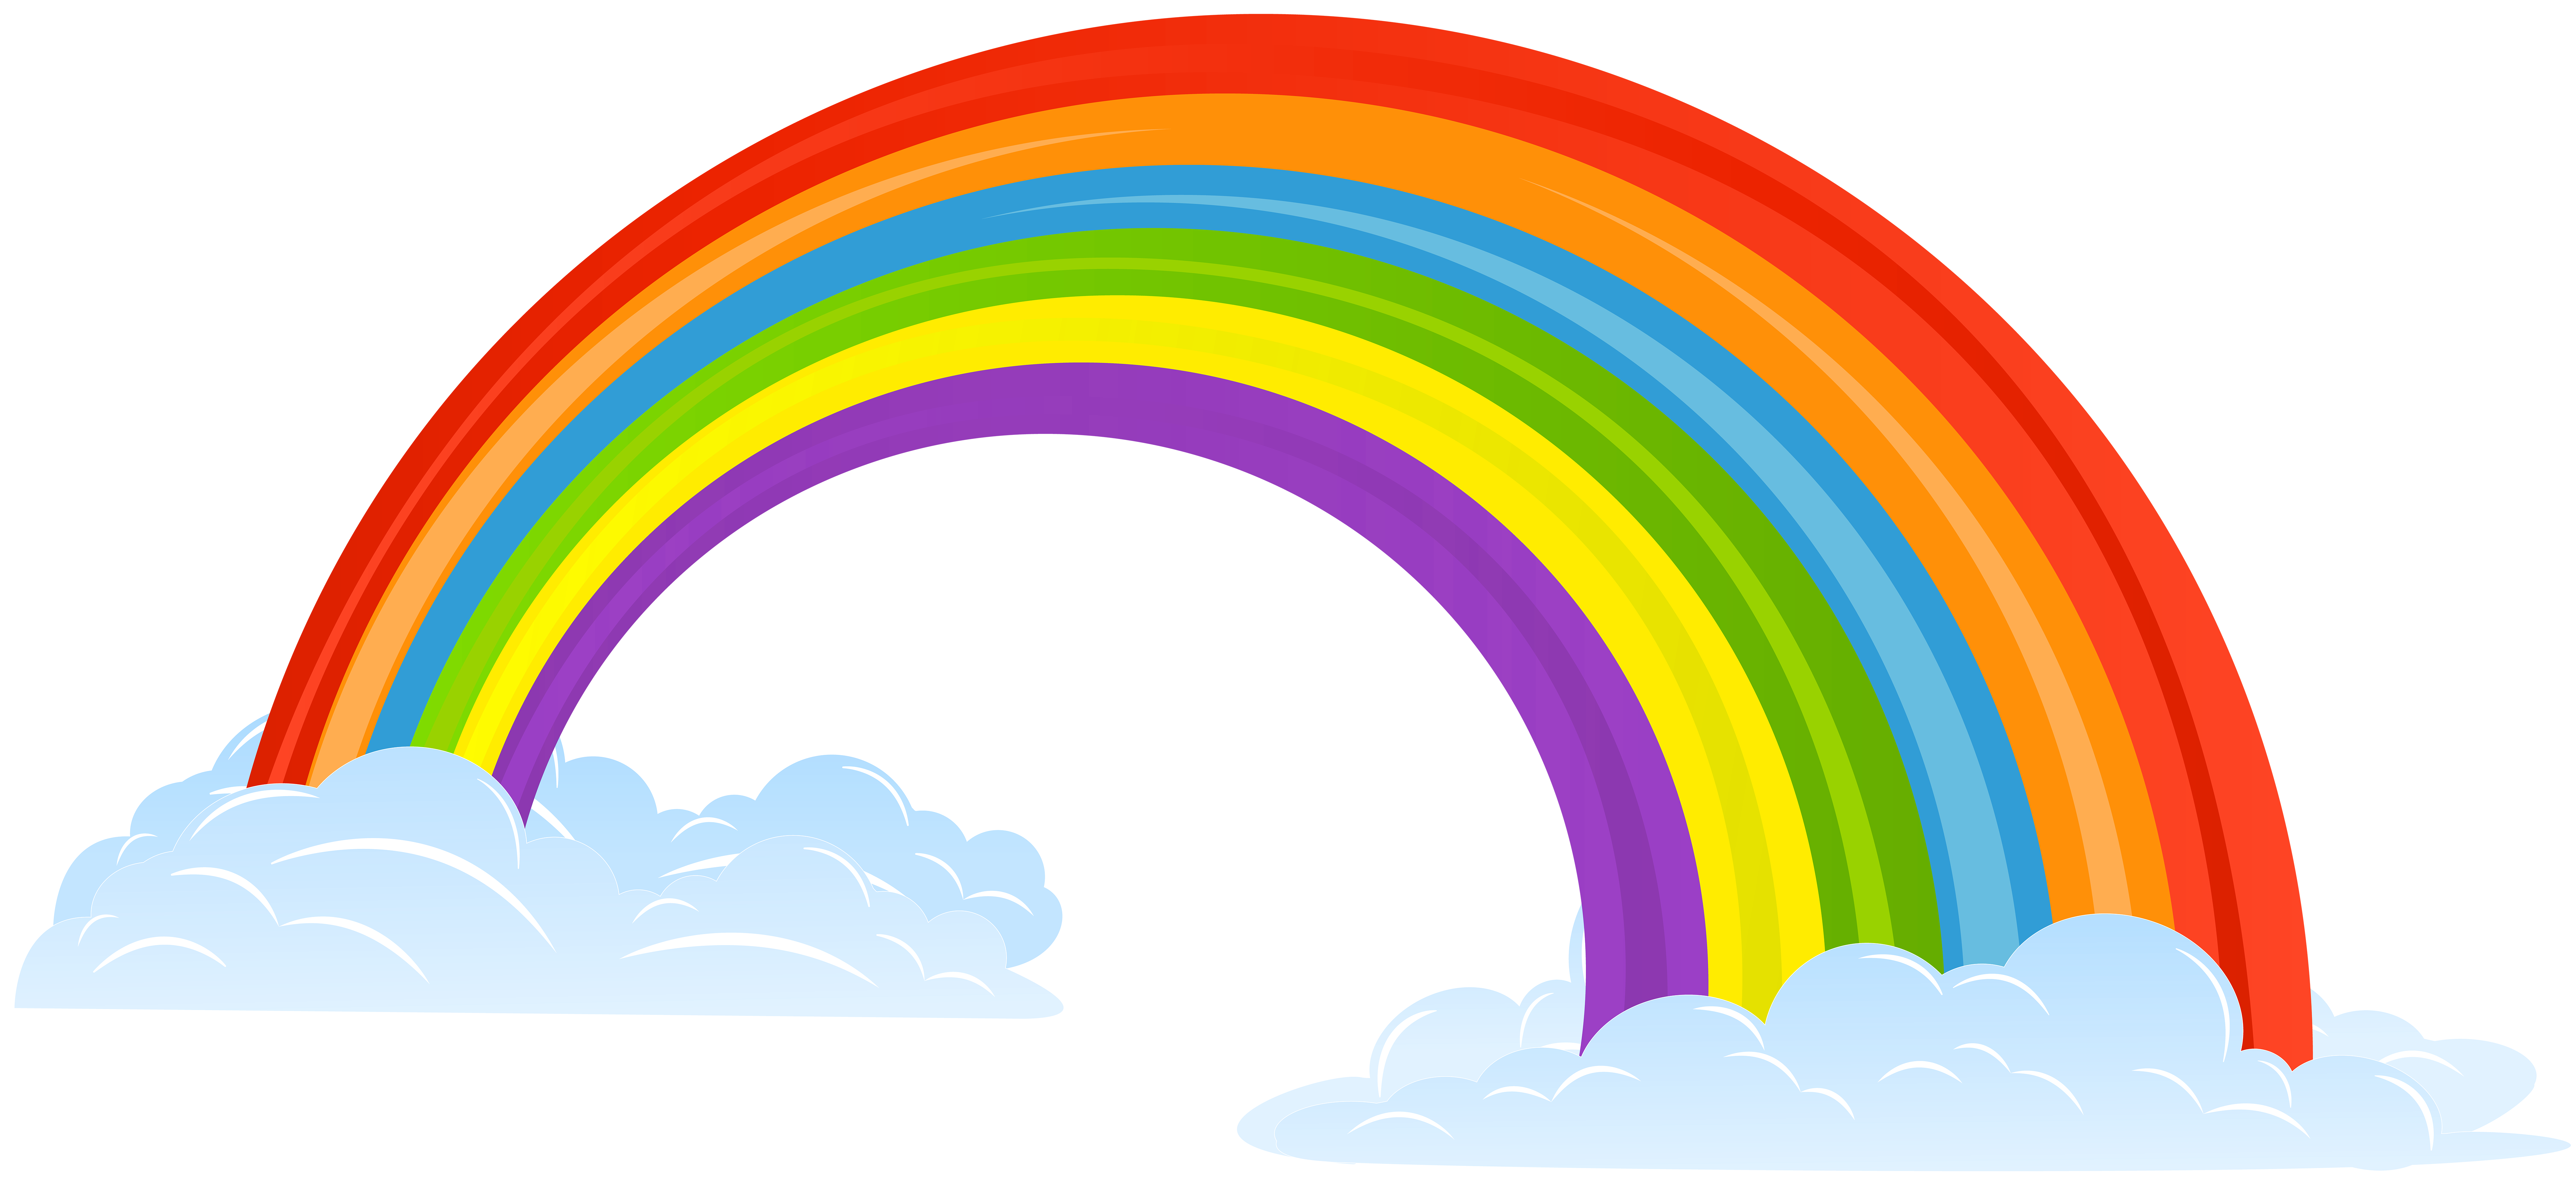 clip art rainbow